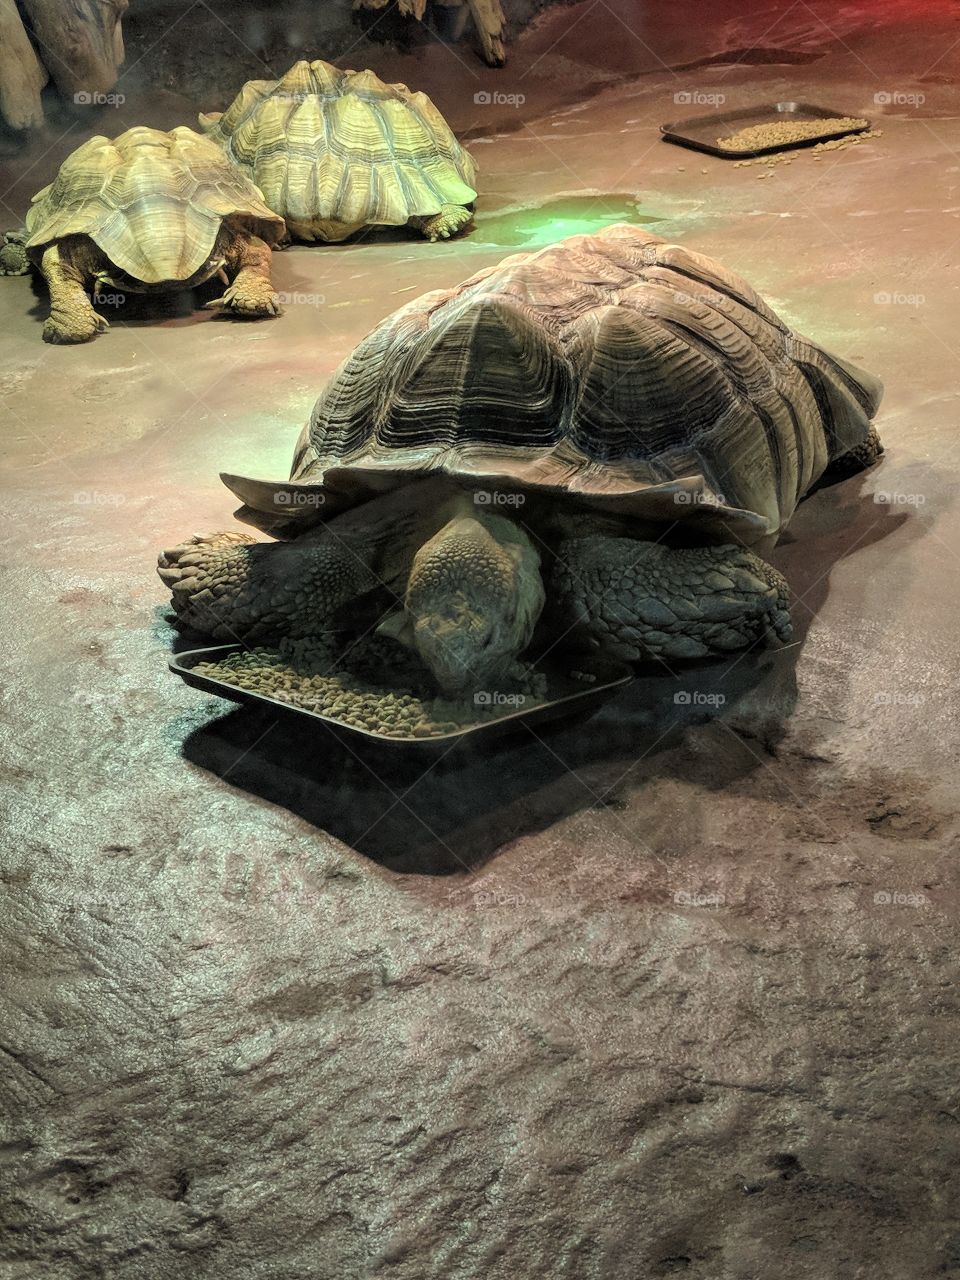 Tortoise at Cleveland Aquarium